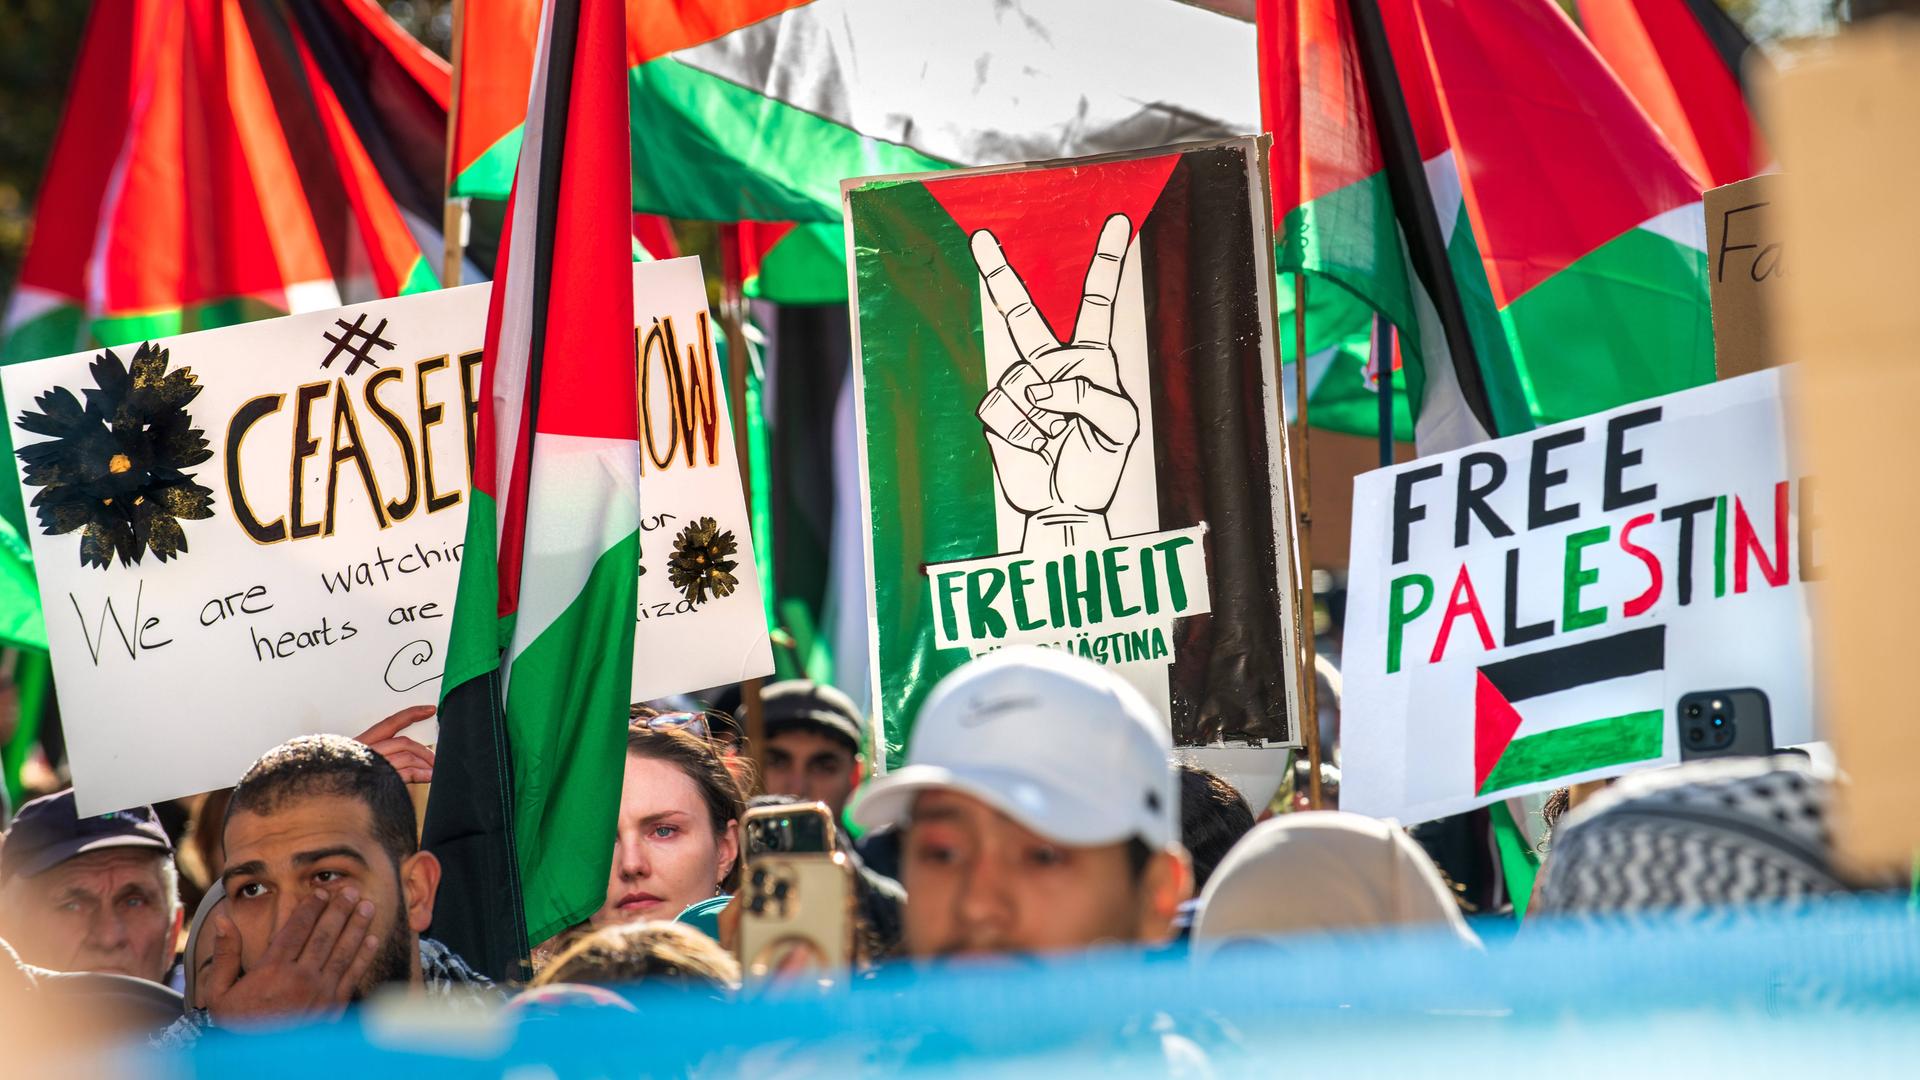 Teilnehmende halten Palästina-Flaggen und Schilder. Auf einem steht "Free Palestine".